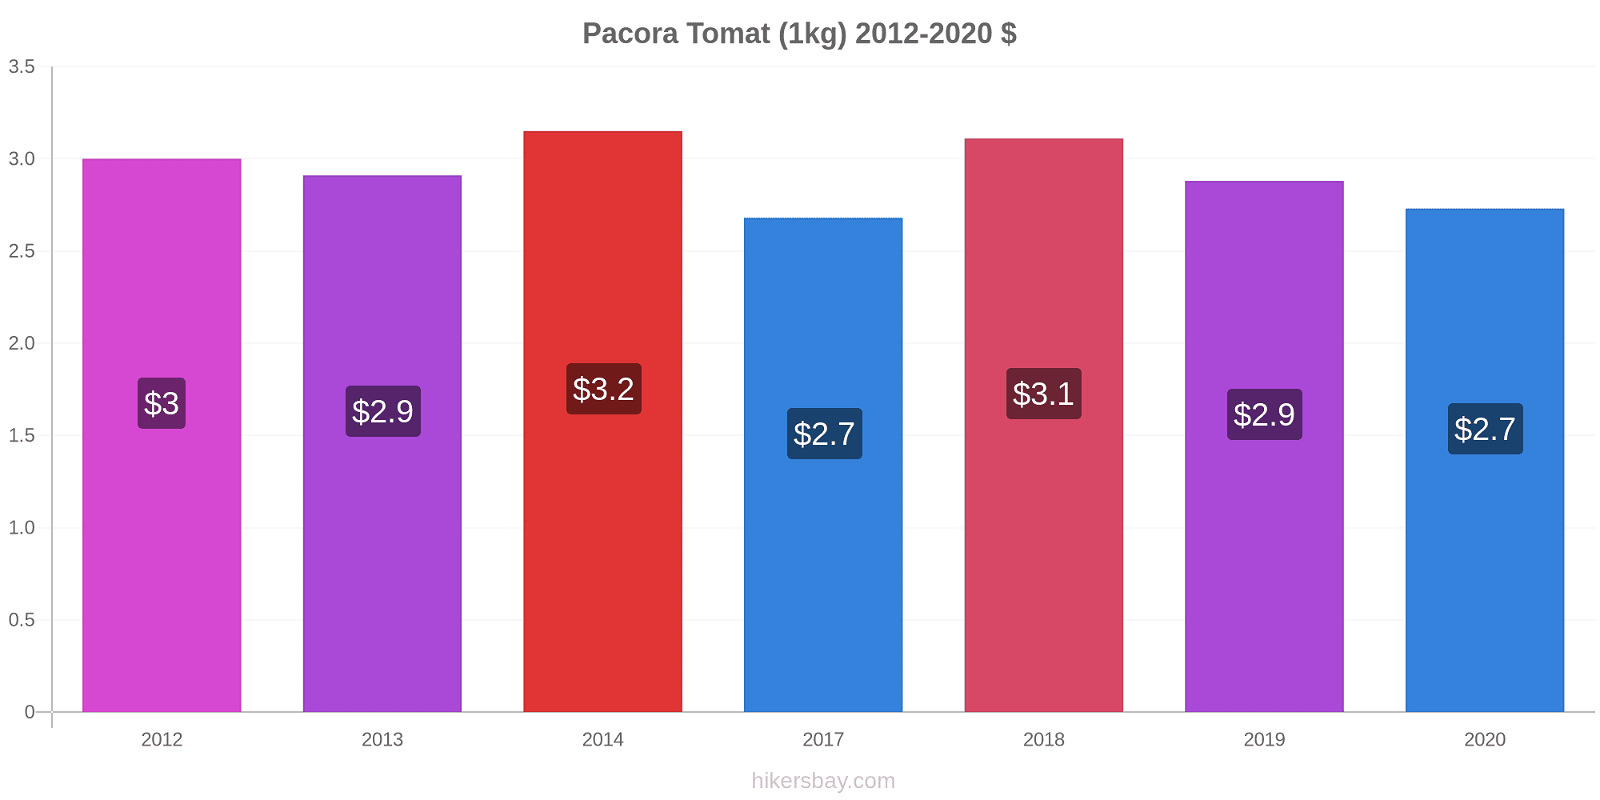 Pacora prisförändringar Tomat (1kg) hikersbay.com